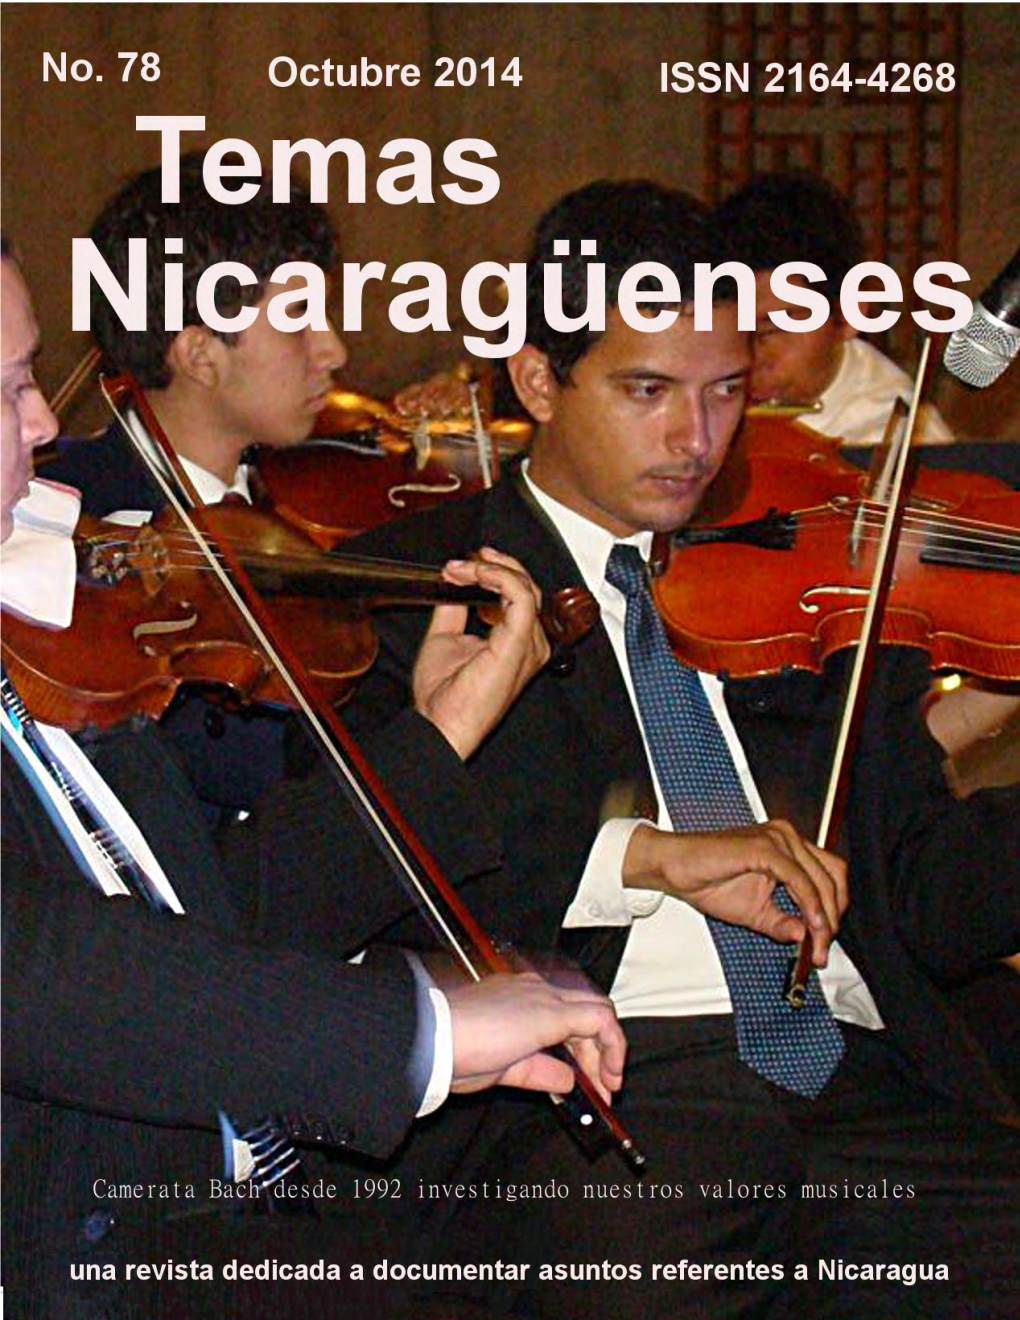 “Cultura Política Nicaragüense” Por El Dr. Emilio Álvarez Montalván